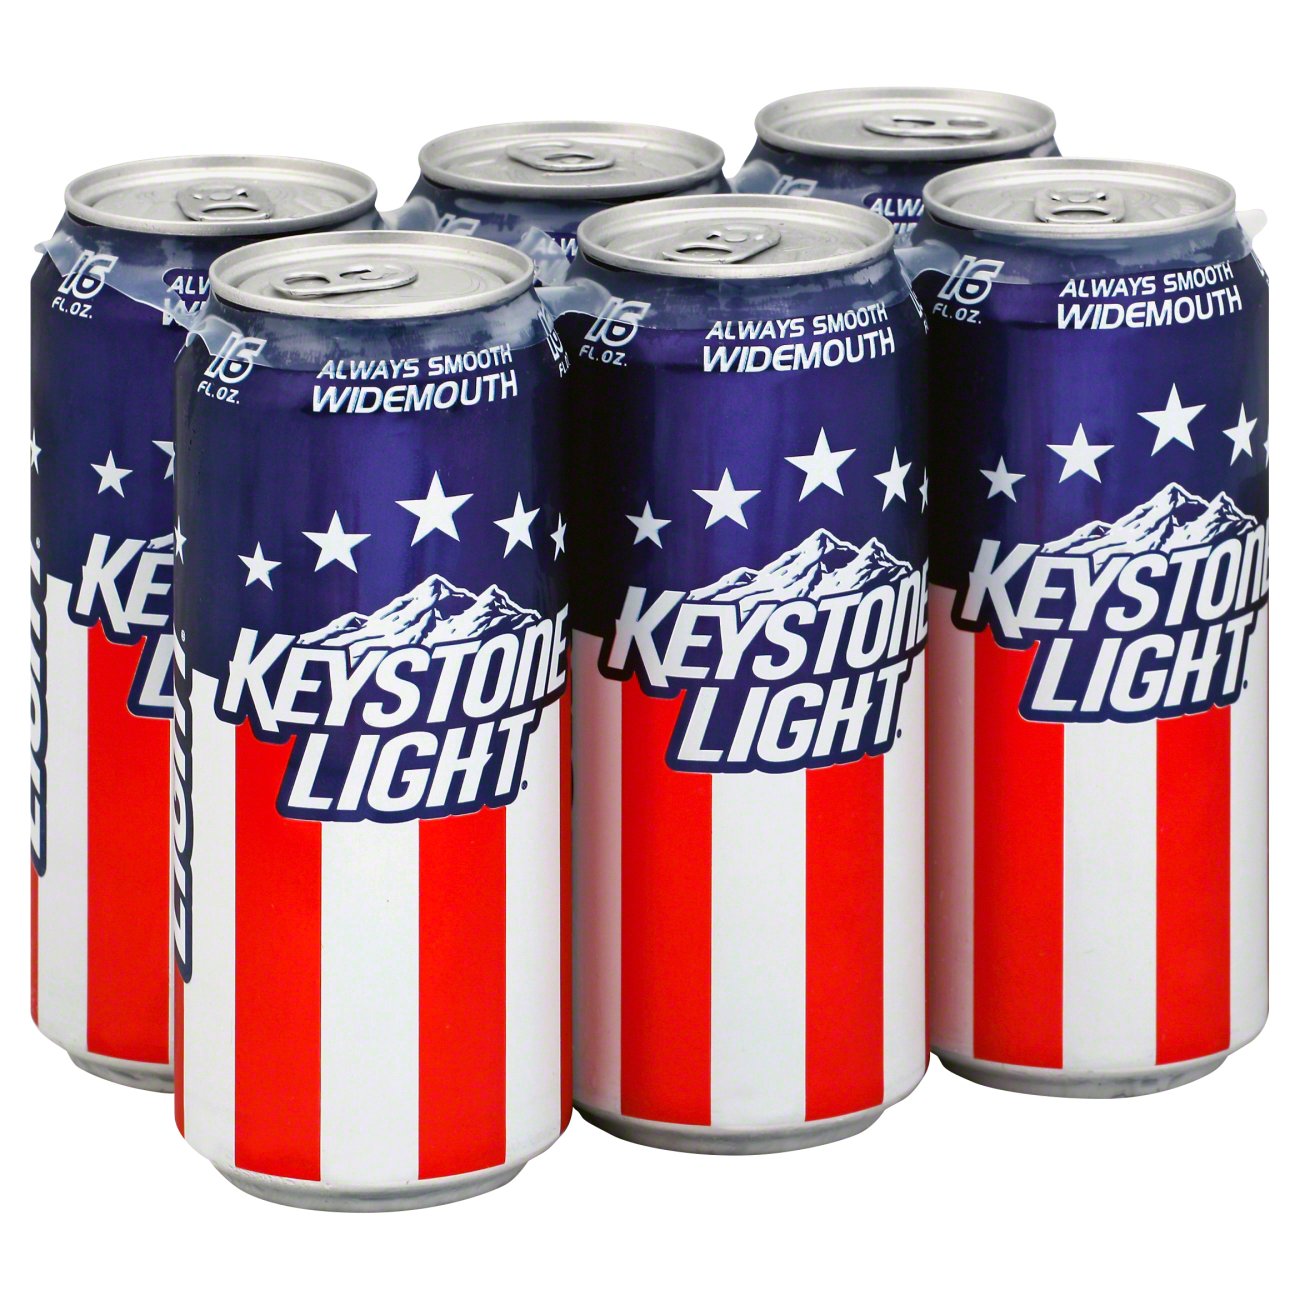 Af storm Jolly Sentimental Keystone Light Beer 16 oz Cans - Shop Beer at H-E-B